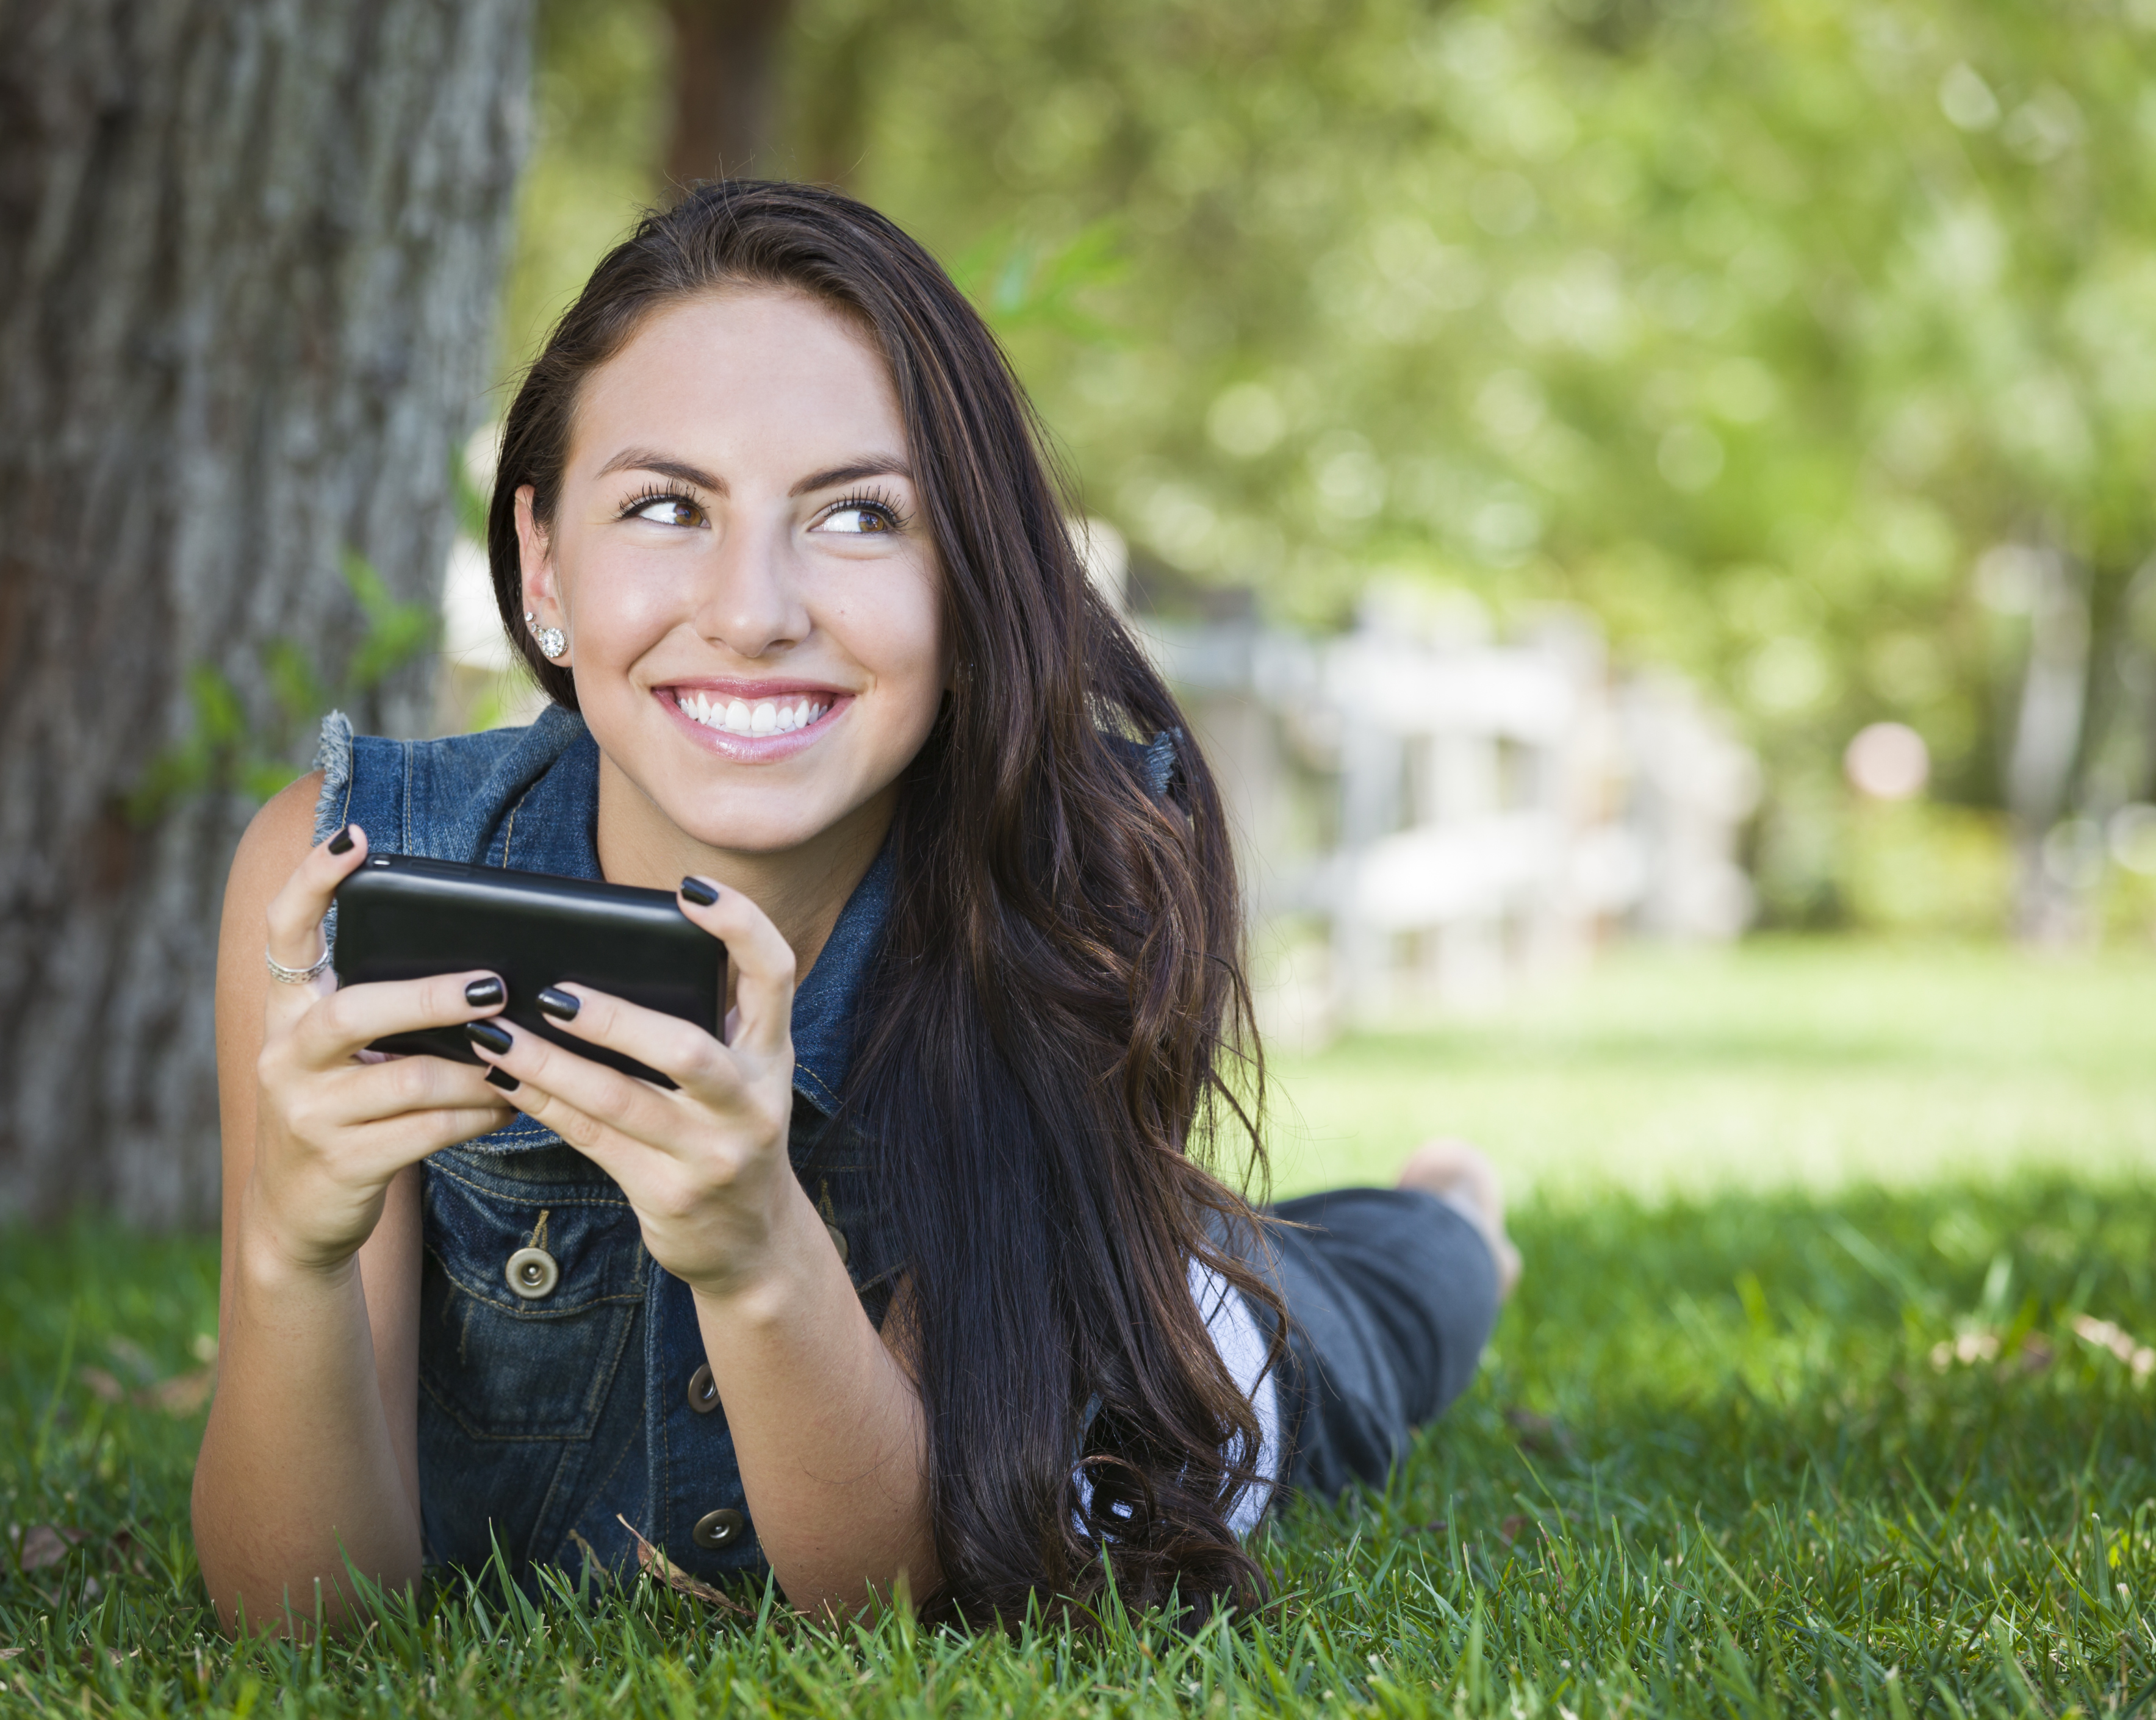 Мобильный девайс которым снимают селфи. Молодая женщина. Молодые женщины фото. Молодой человек с телефоном. Молодая женщина фото.